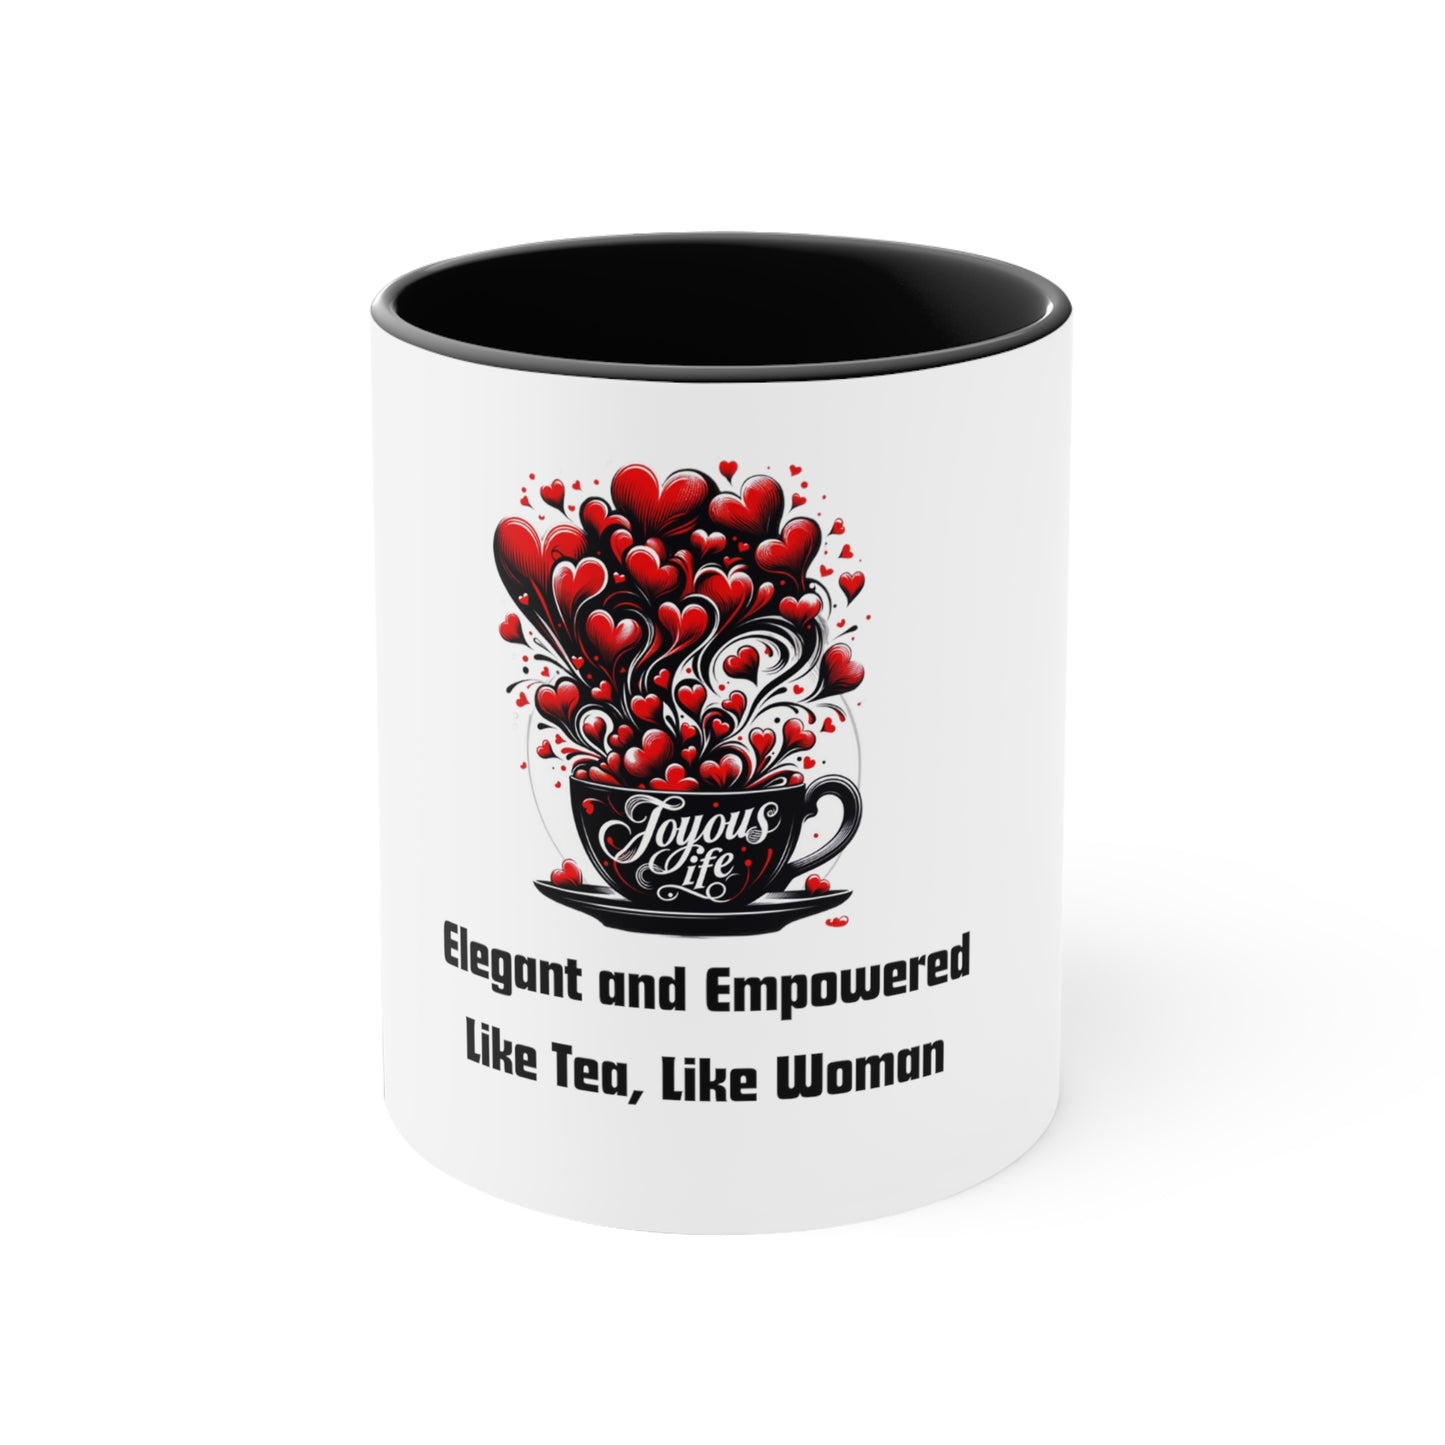 Elegance & Empowerment Mug: Like Tea, Like Woman